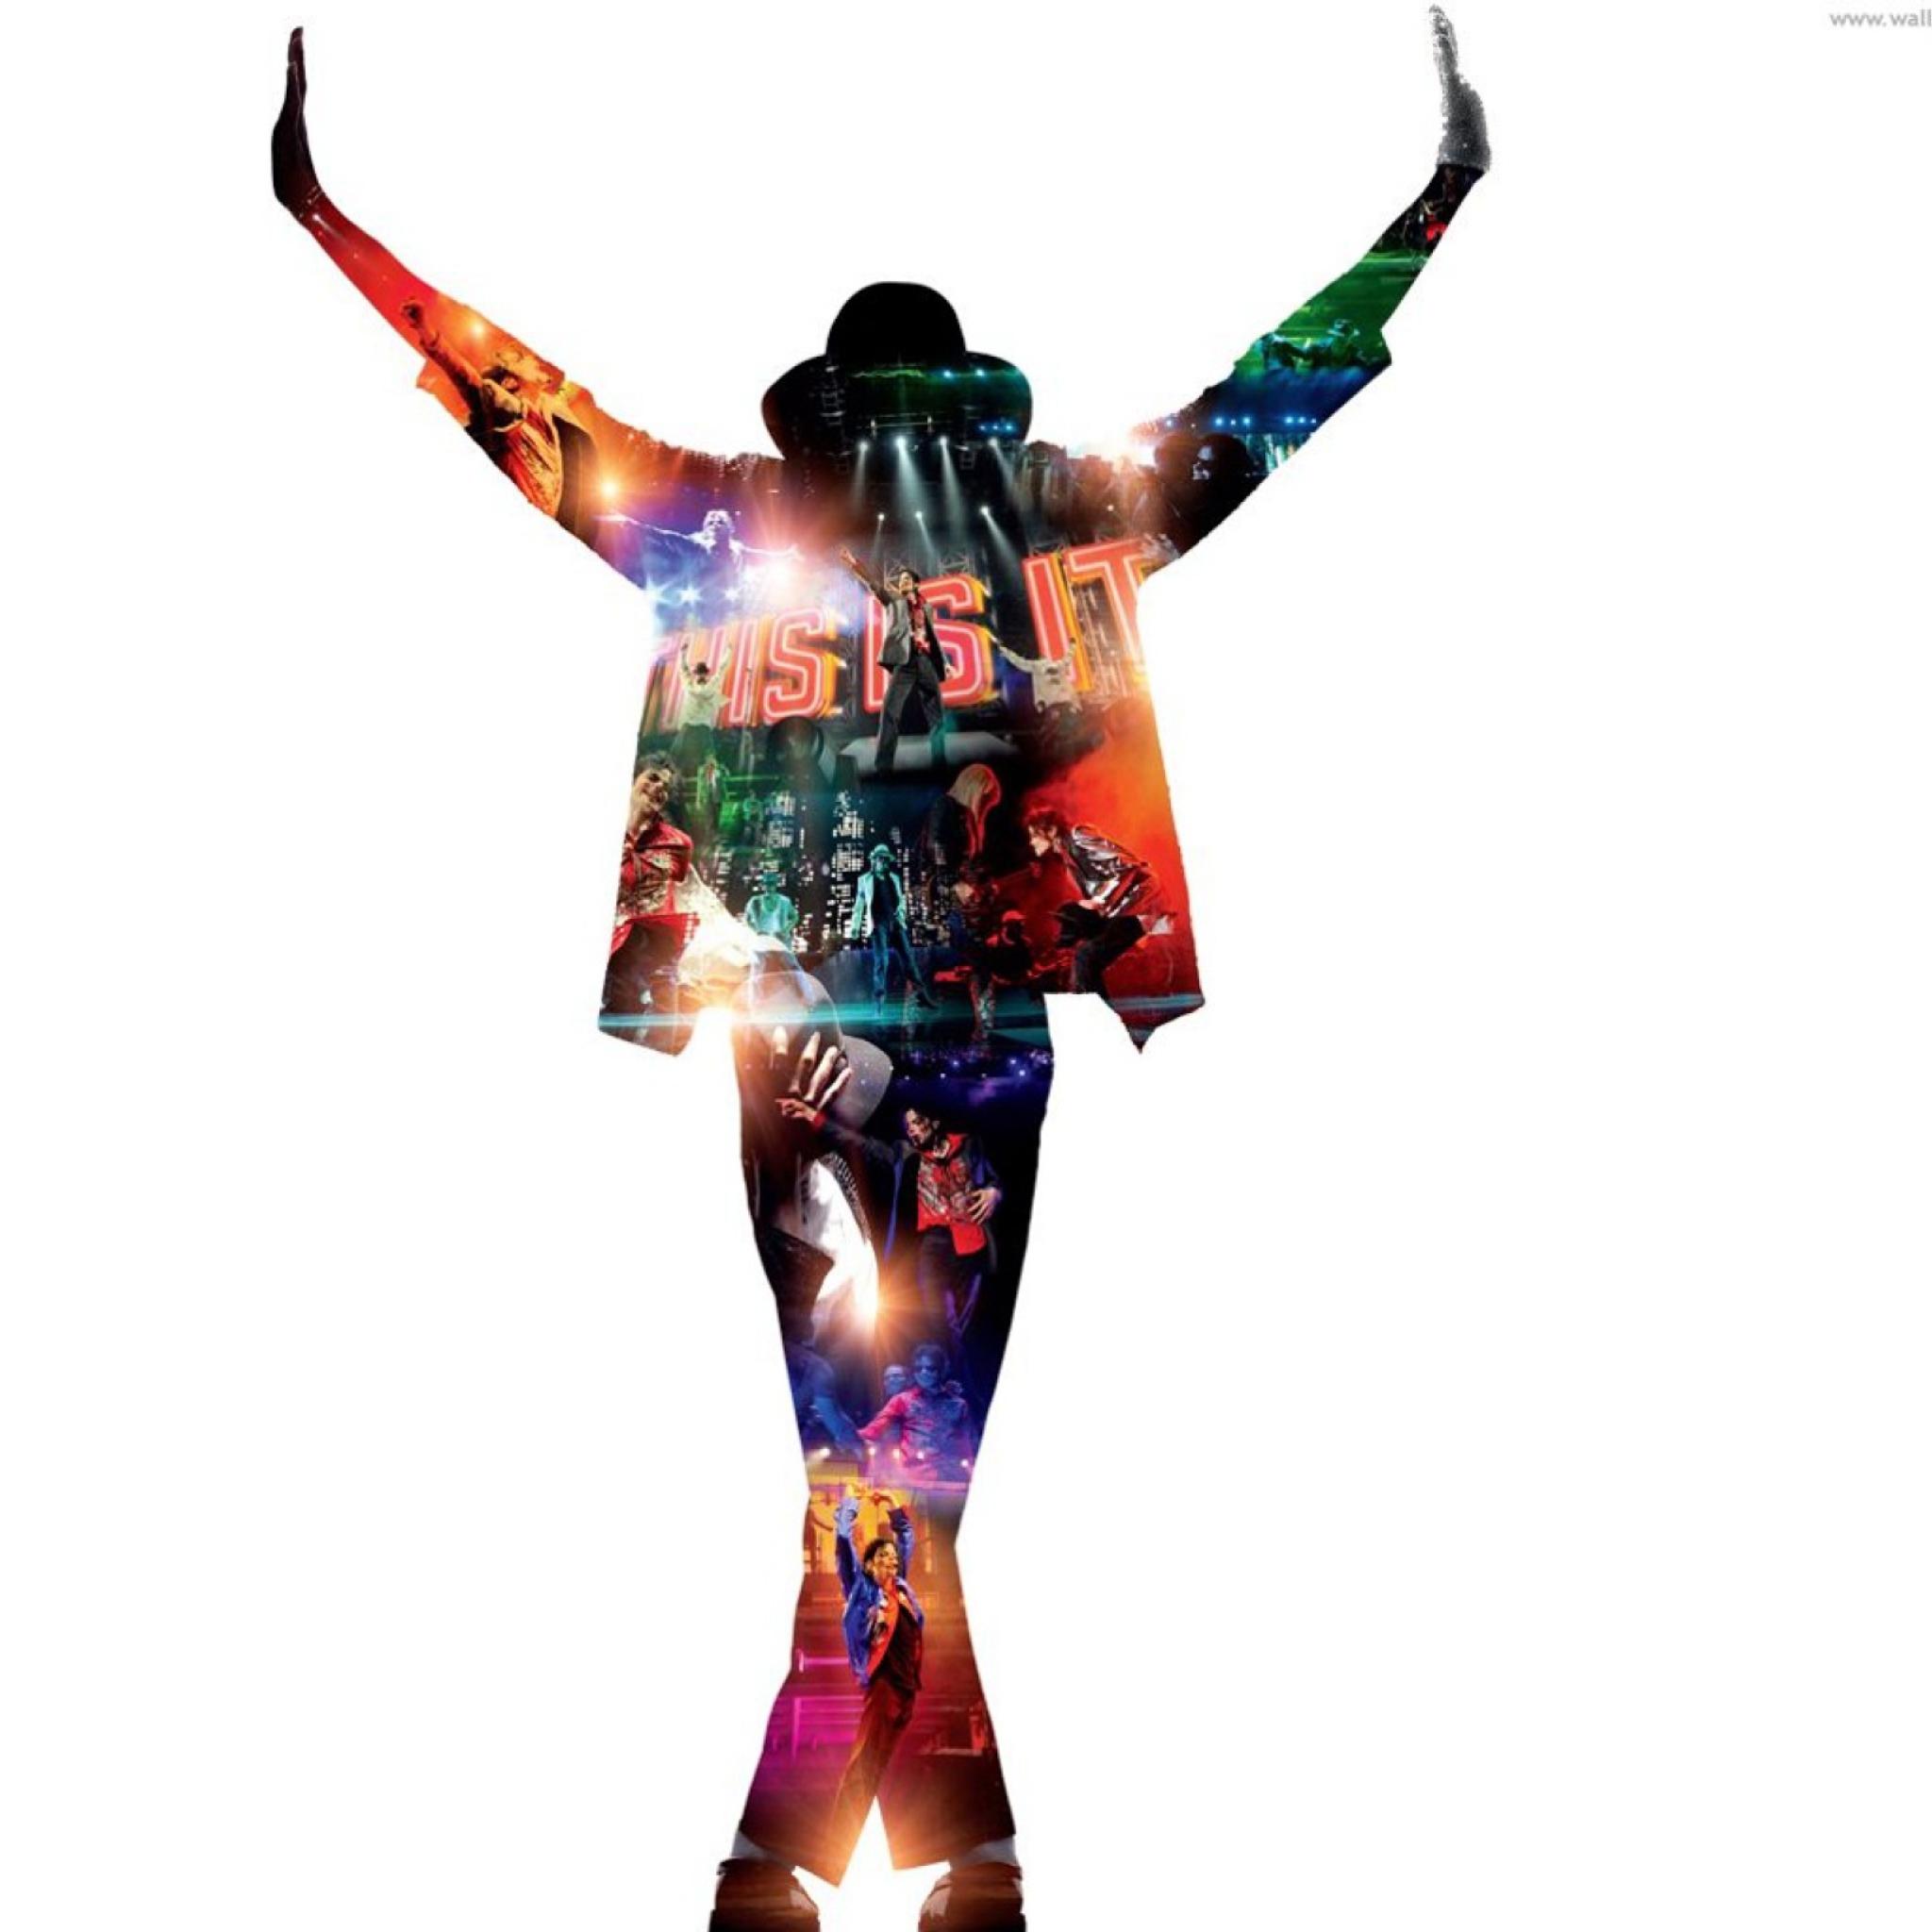 Michael Jackson wallpaper 2048x2048